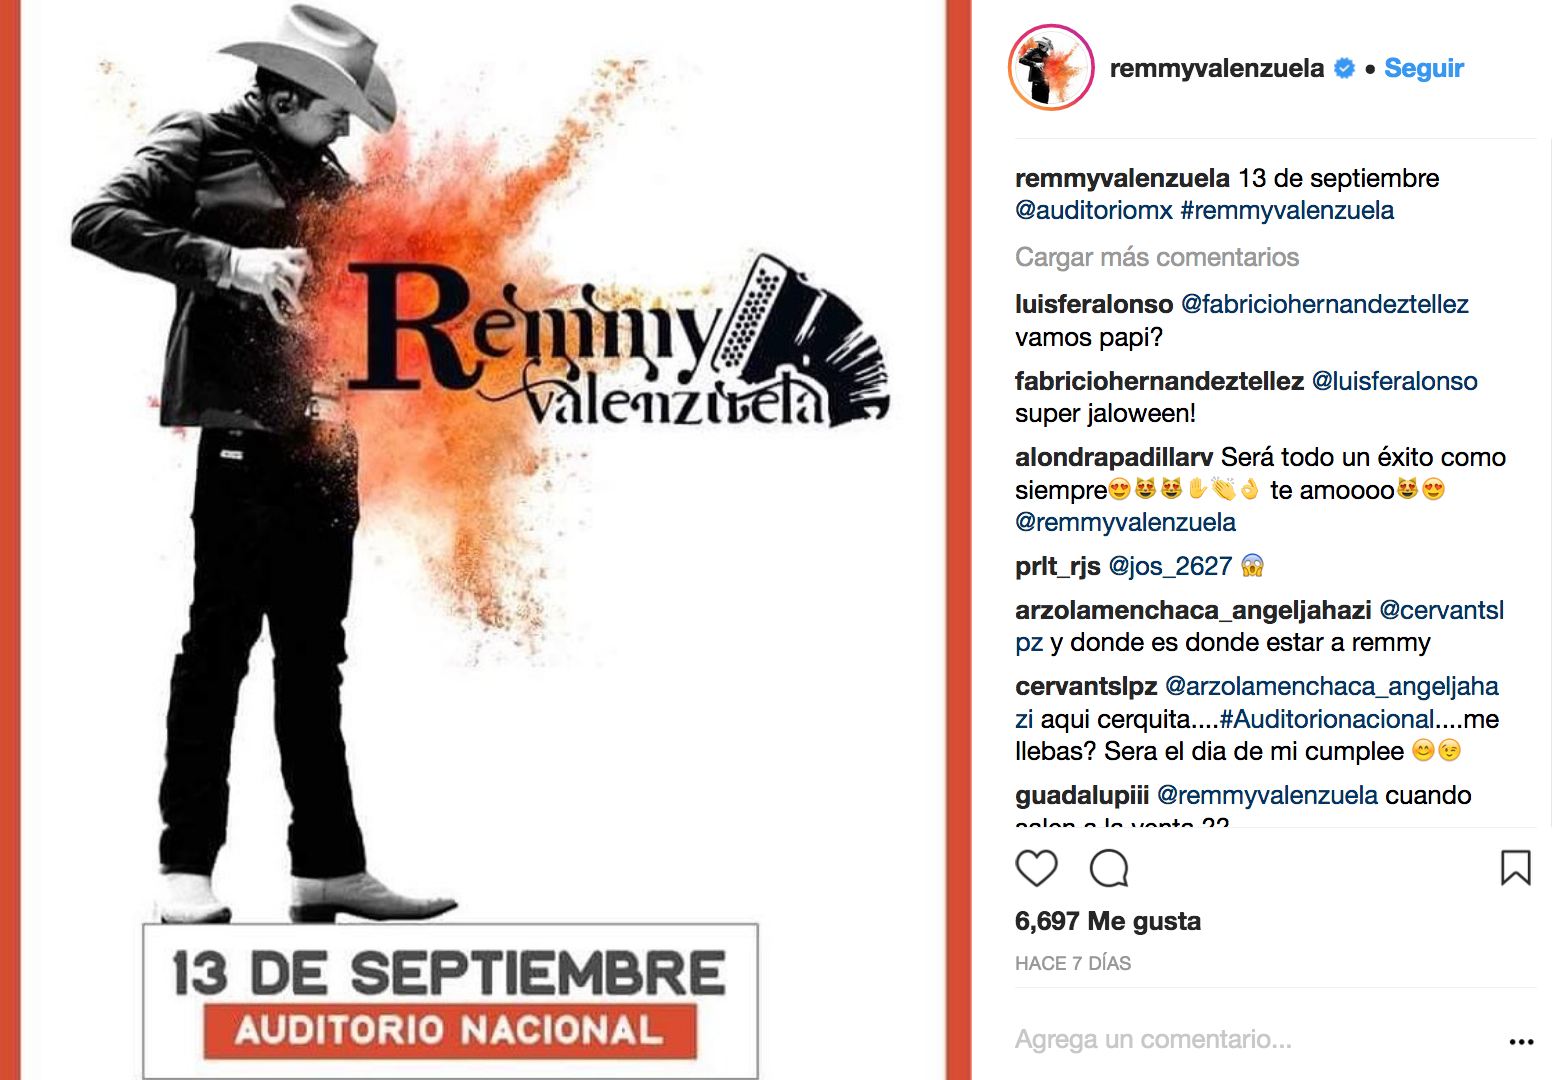 Remmy Valenzuela próximamente se presentará ante su público de la Ciudad de México, quienes lo esperan con mucha emoción.